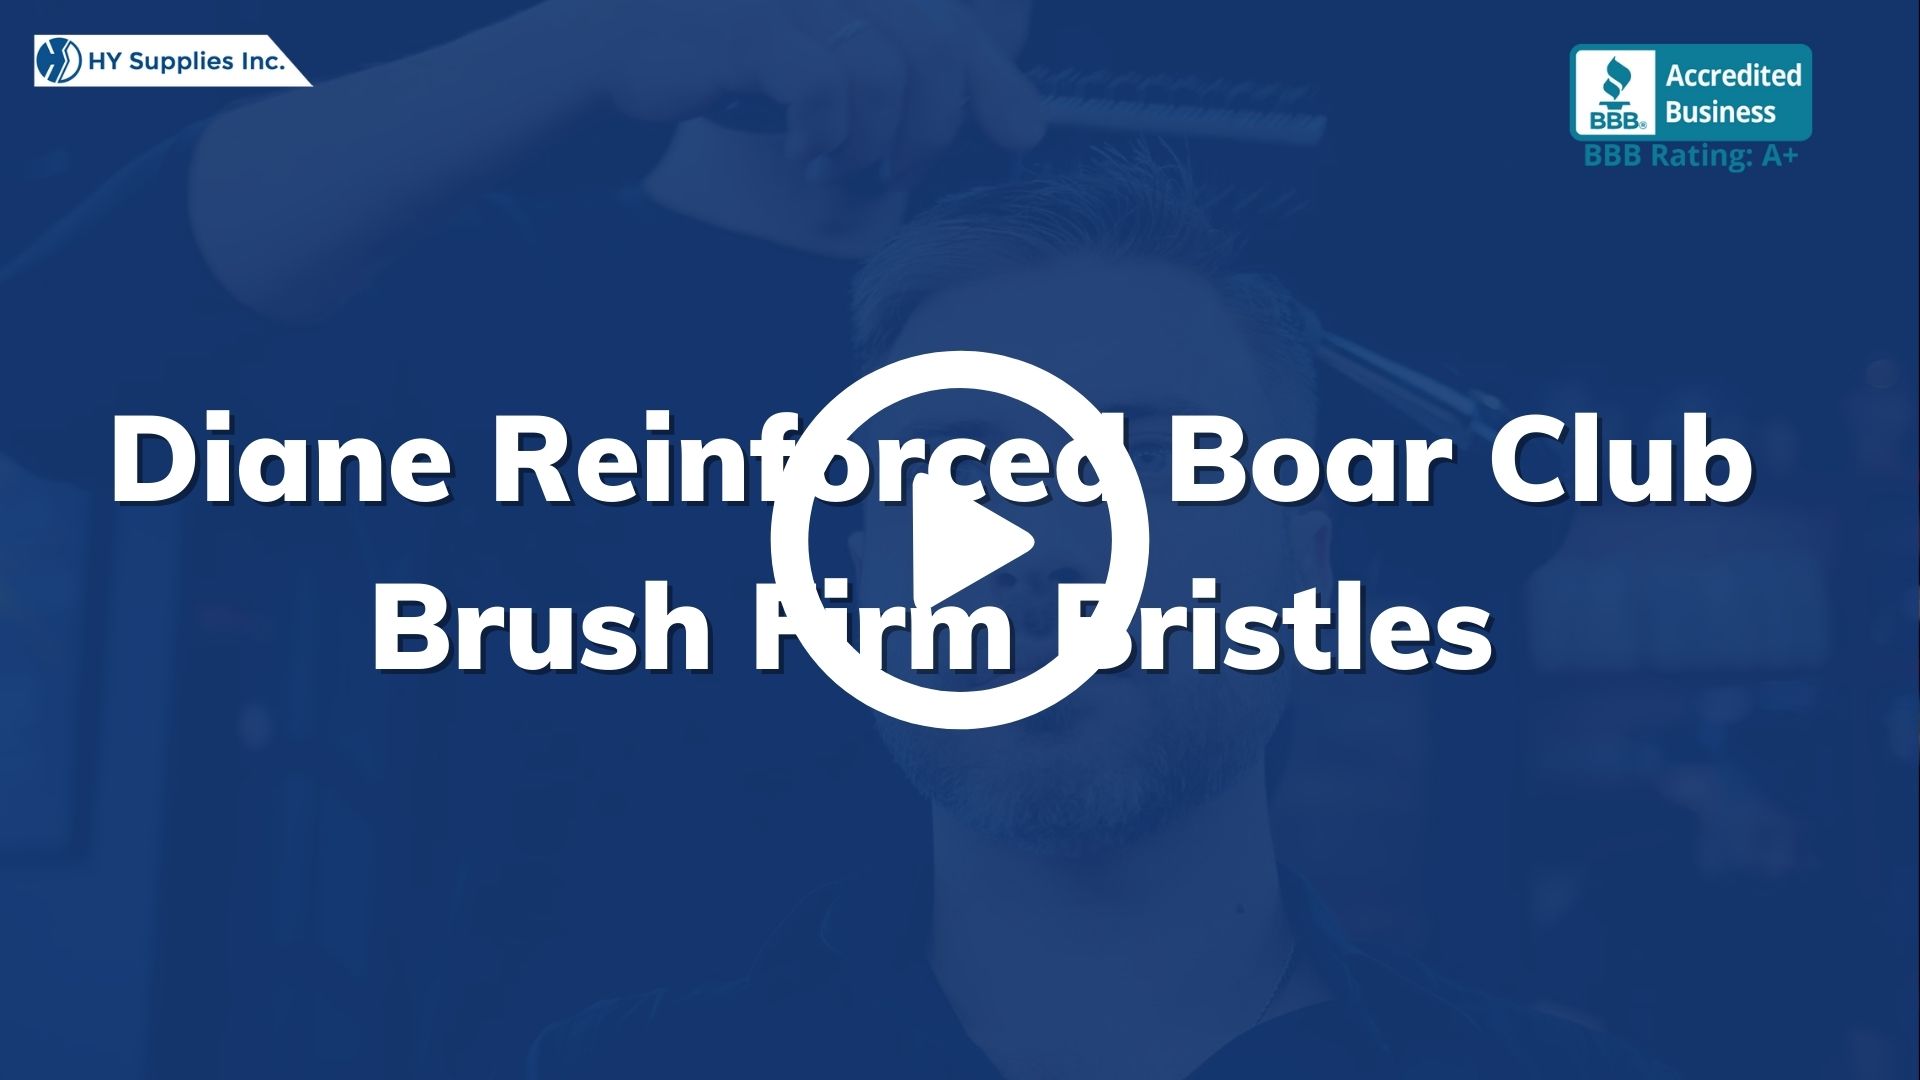 Diane Reinforced Boar Club Brush Firm Bristles